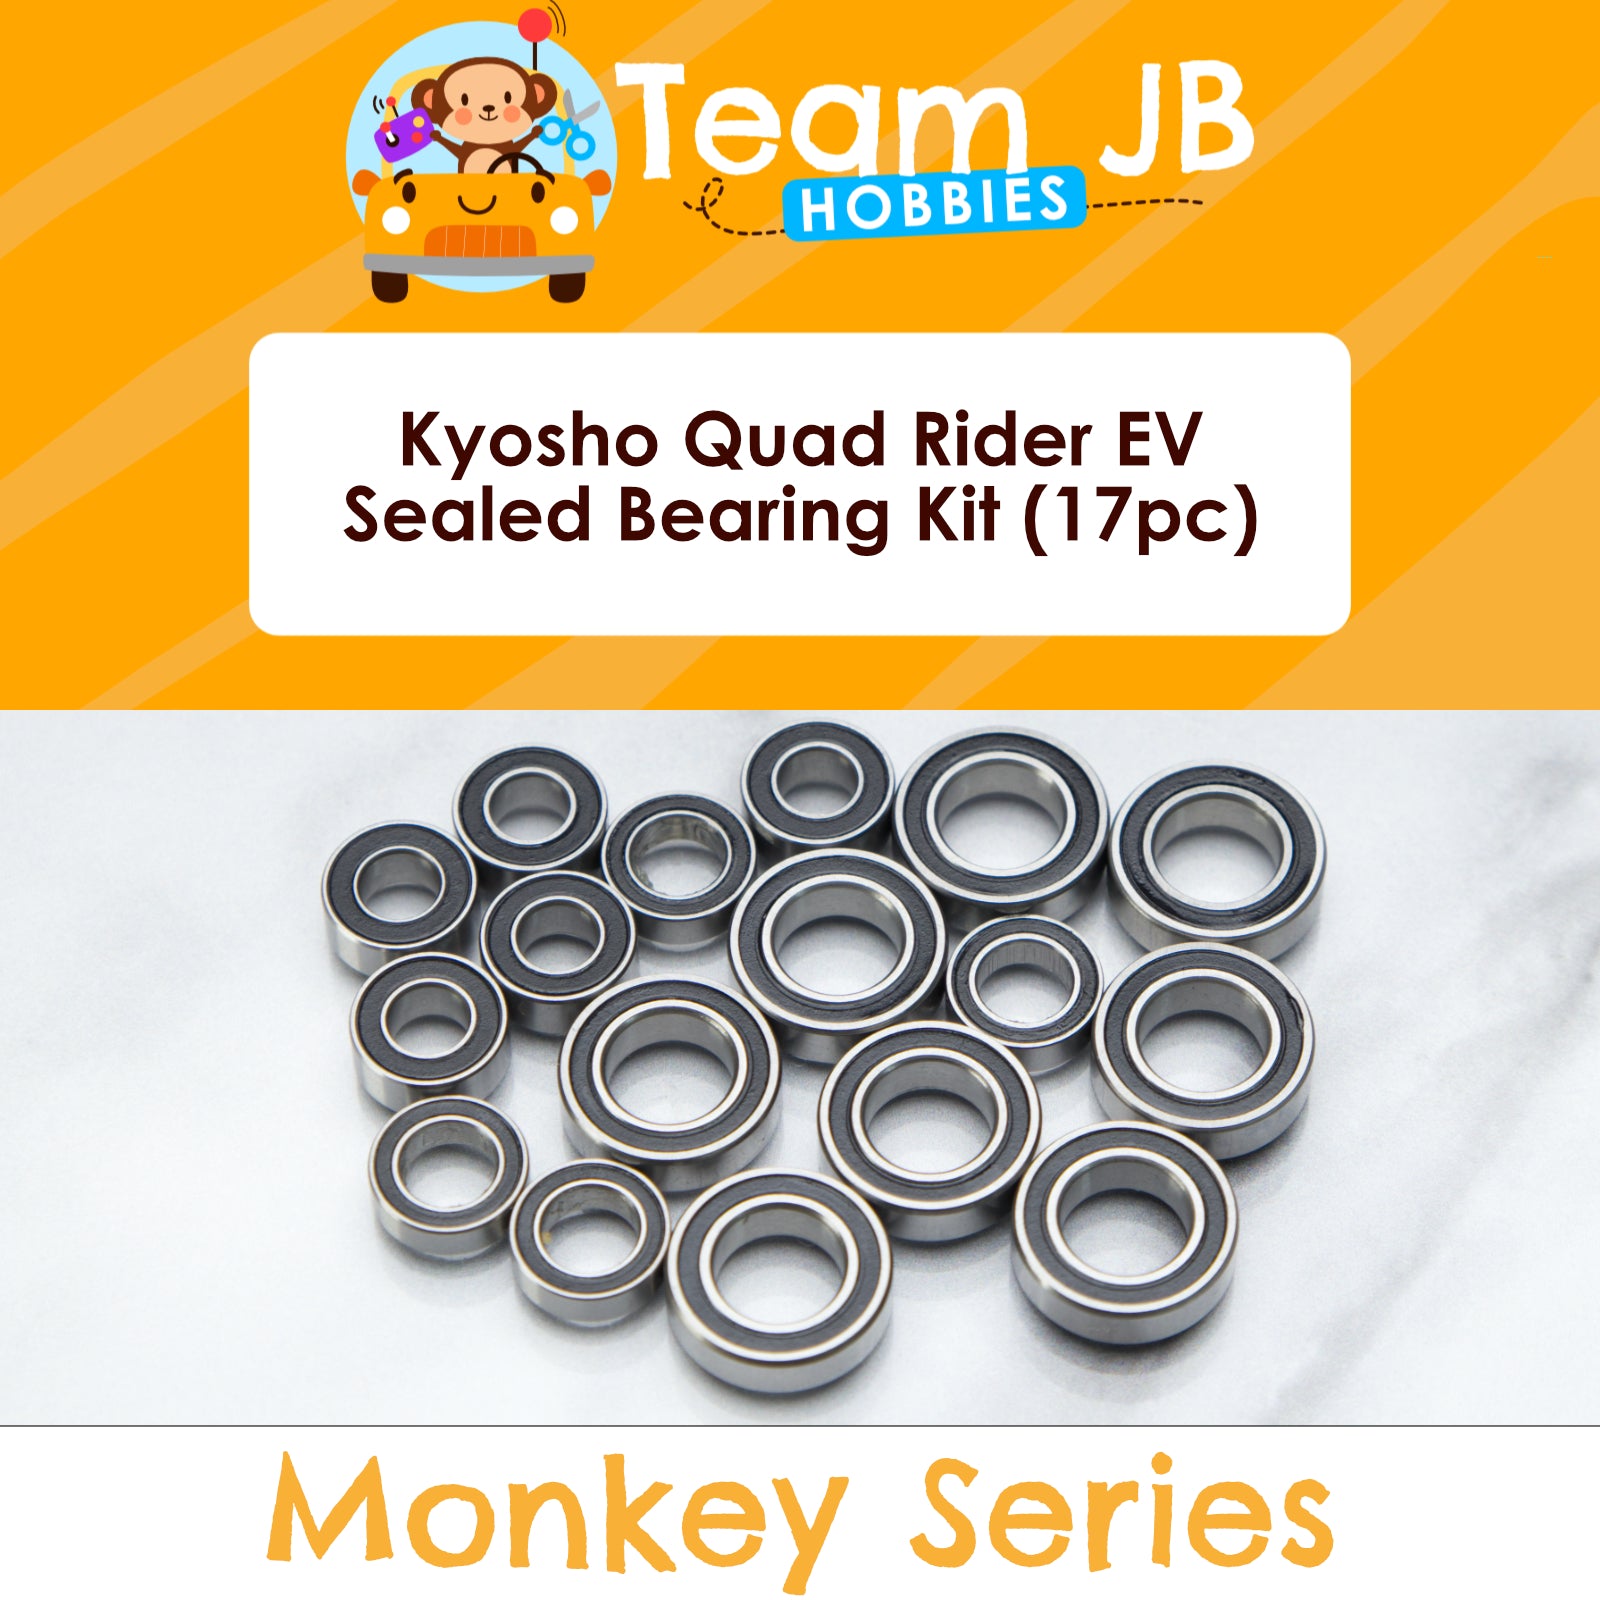 Kyosho Quad Rider EV - Sealed Bearing Kit